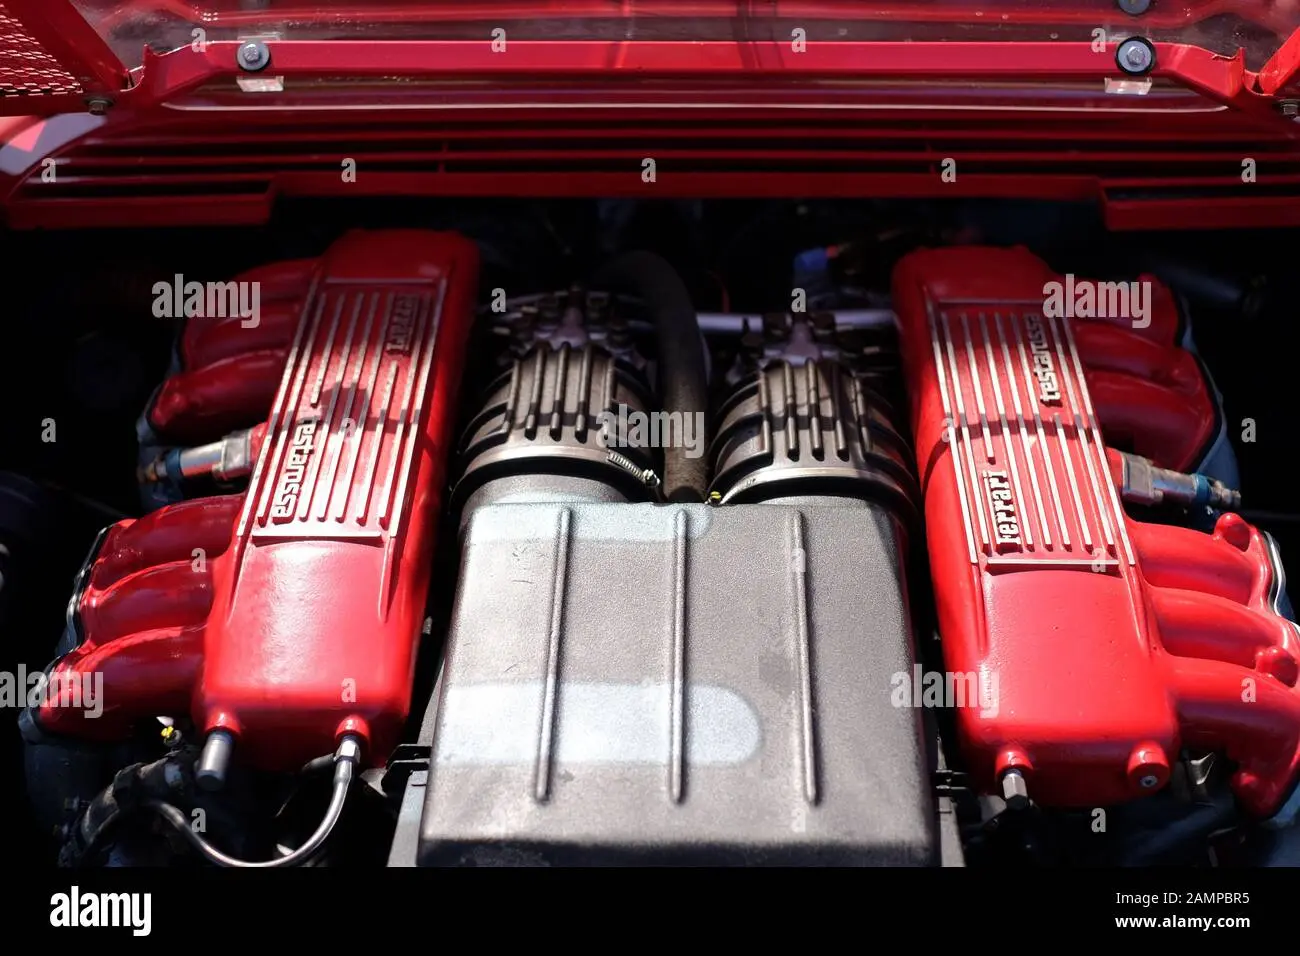 cilindros de ferrari testarossa - Cuántos cilindros tiene un Ferrari